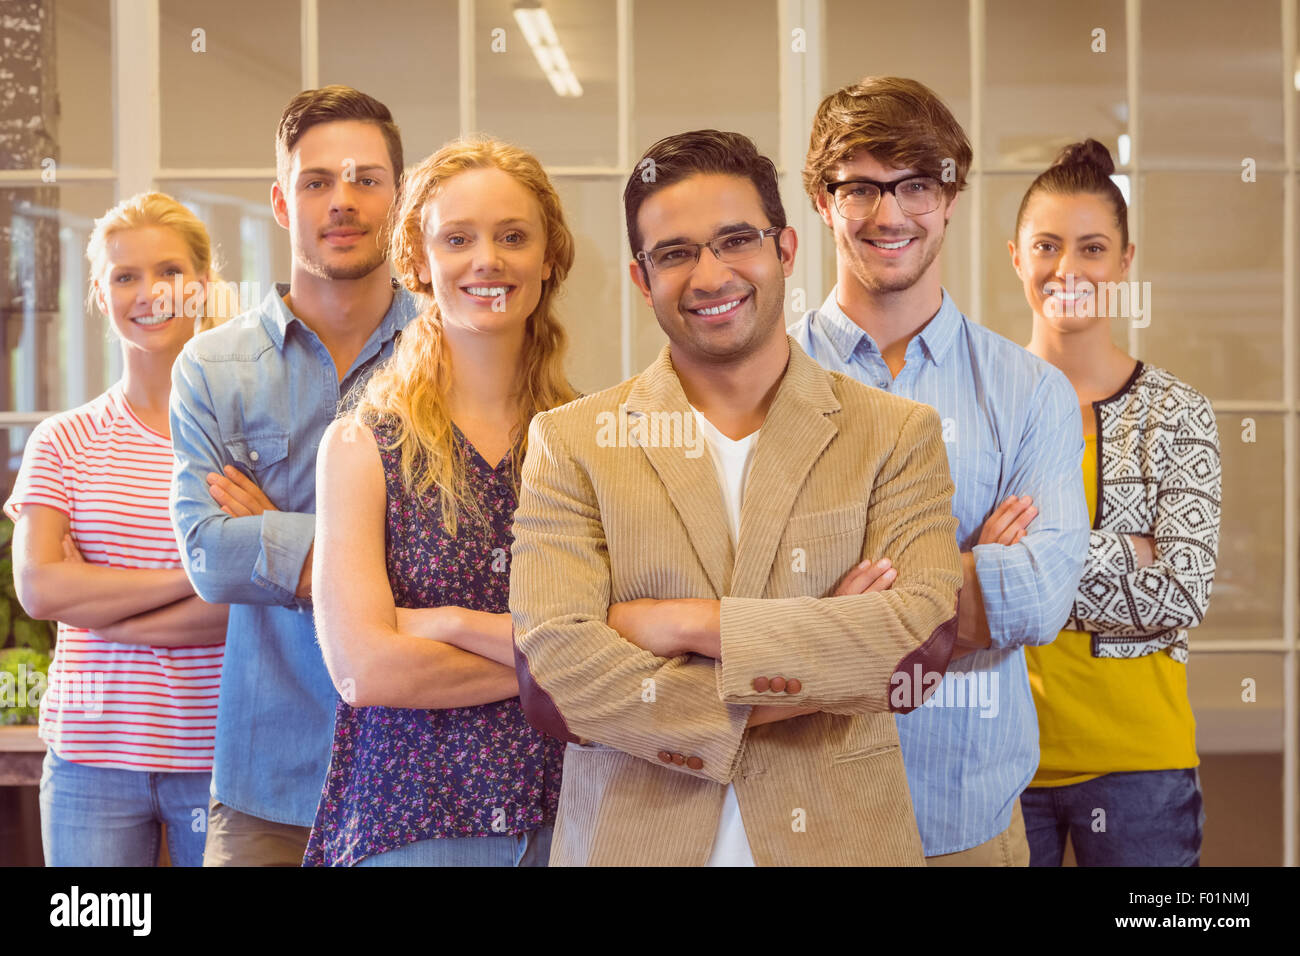 Portrait of creative team Stock Photo